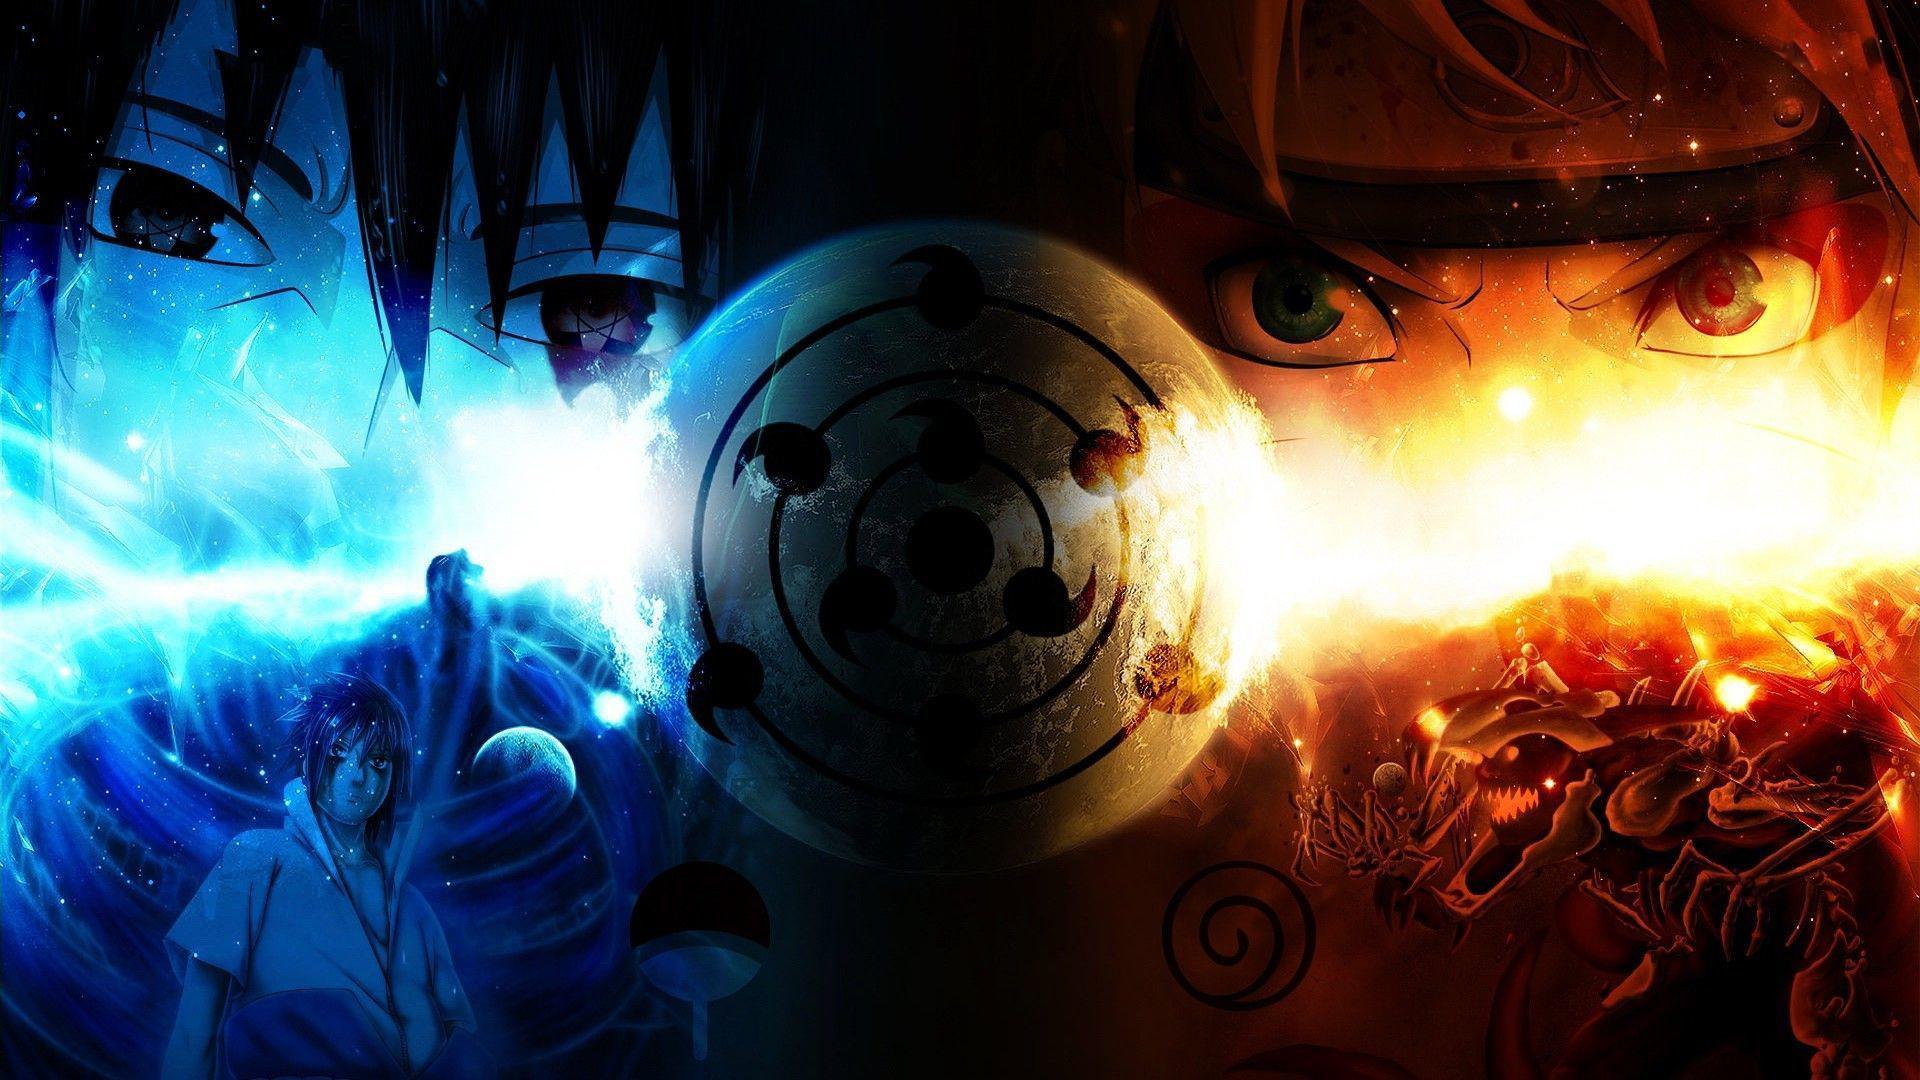 Hình nền Naruto 4K: Khám phá sự vĩ đại của hành trình Naruto với hình nền 4K chất lượng cao. Chỉ cần một cái nhìn, bạn sẽ được đưa vào trận đấu đầy bí ẩn, chất lượng hình ảnh hoàn hảo sẽ khiến cho những fan cuồng Naruto phải hài lòng và hạnh phúc.